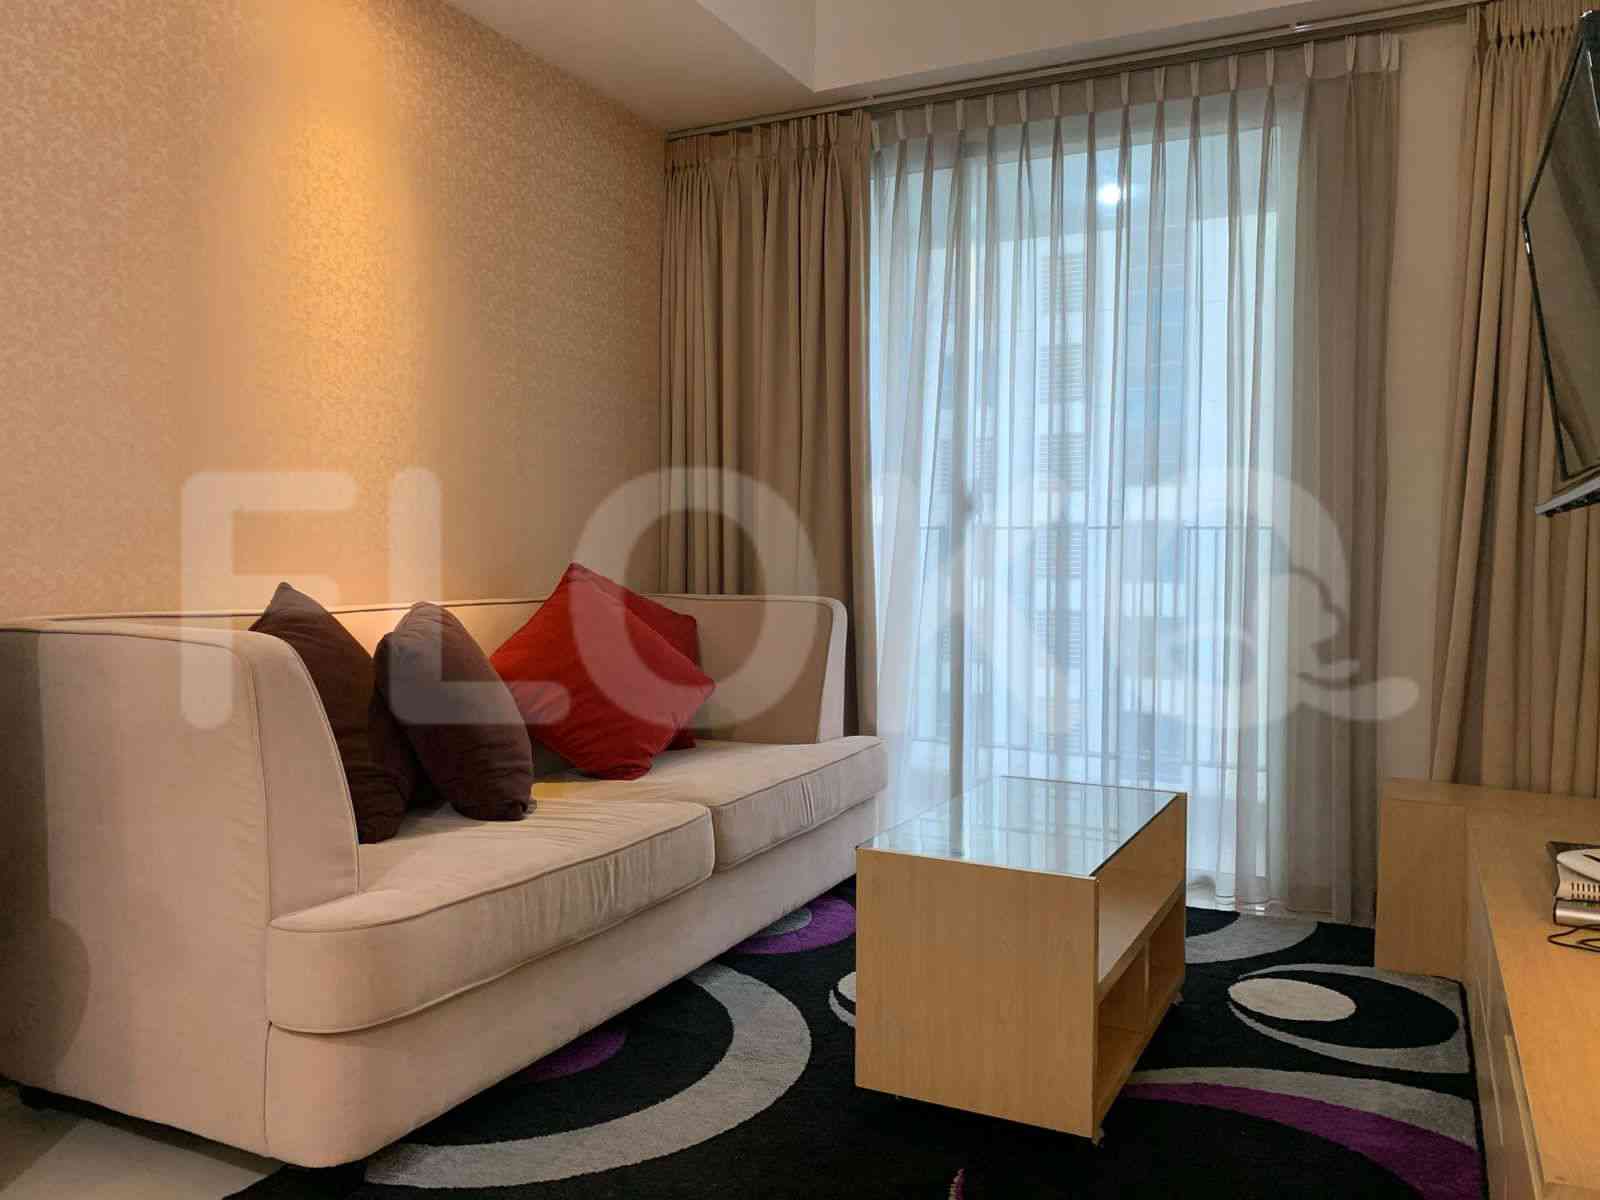 2 Bedroom on 8th Floor for Rent in Casa Grande - fte526 1